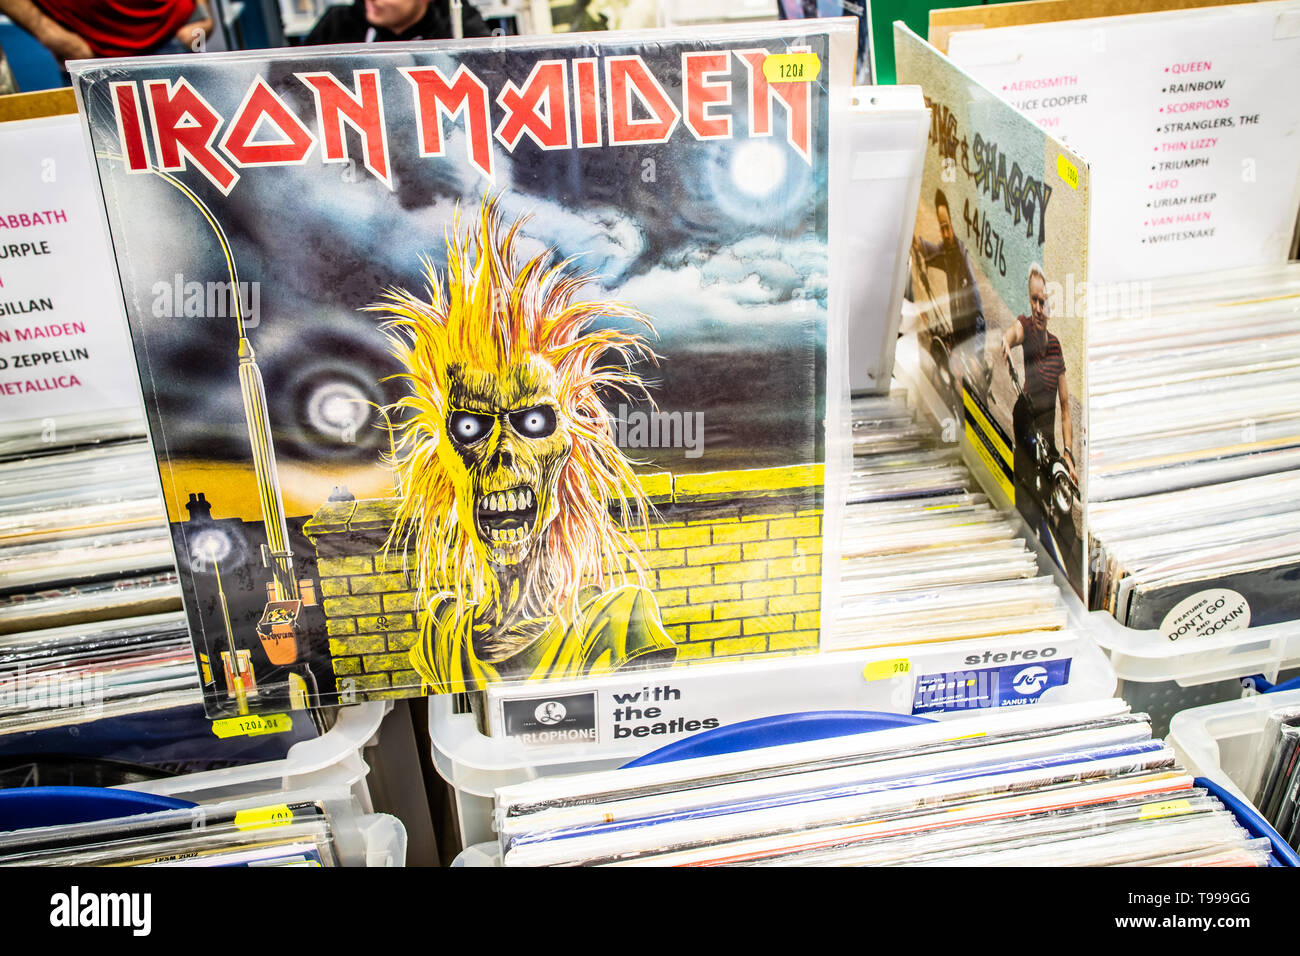 Nadarzyn, Polonia, 11 maggio 2019 Iron Maiden album in vinile sul display per la vendita, vinile, LP, Album rock, inglese heavy metal band, collezione di vinili Foto Stock